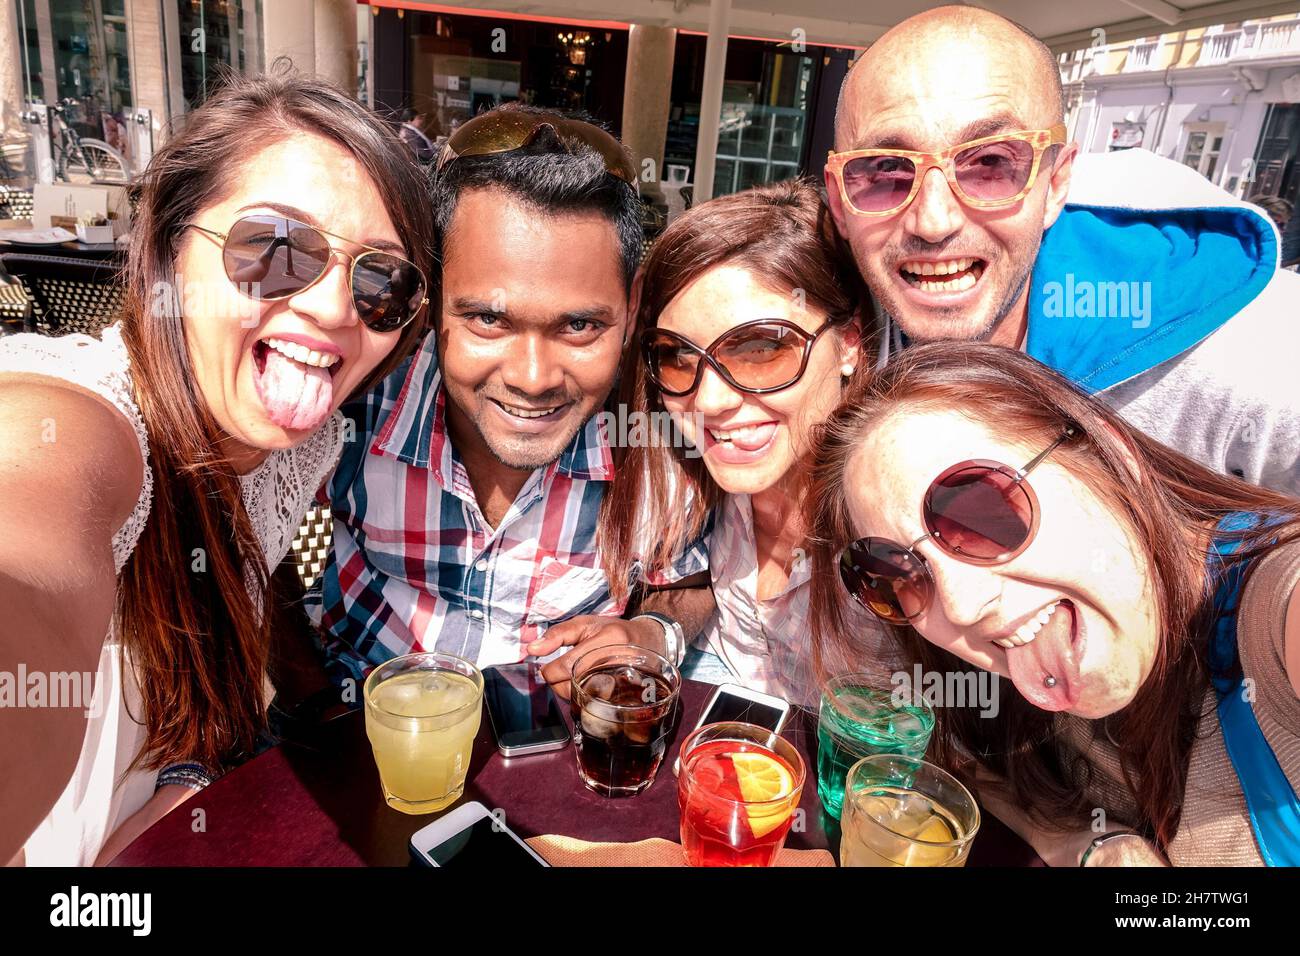 Multirassische Freunde, die Selfie an der Cocktailbar machen - Spaß- und Freundschaftskonzept mit einem Schüler der Generation Z, der sich gemeinsam Zeit nimmt Stockfoto